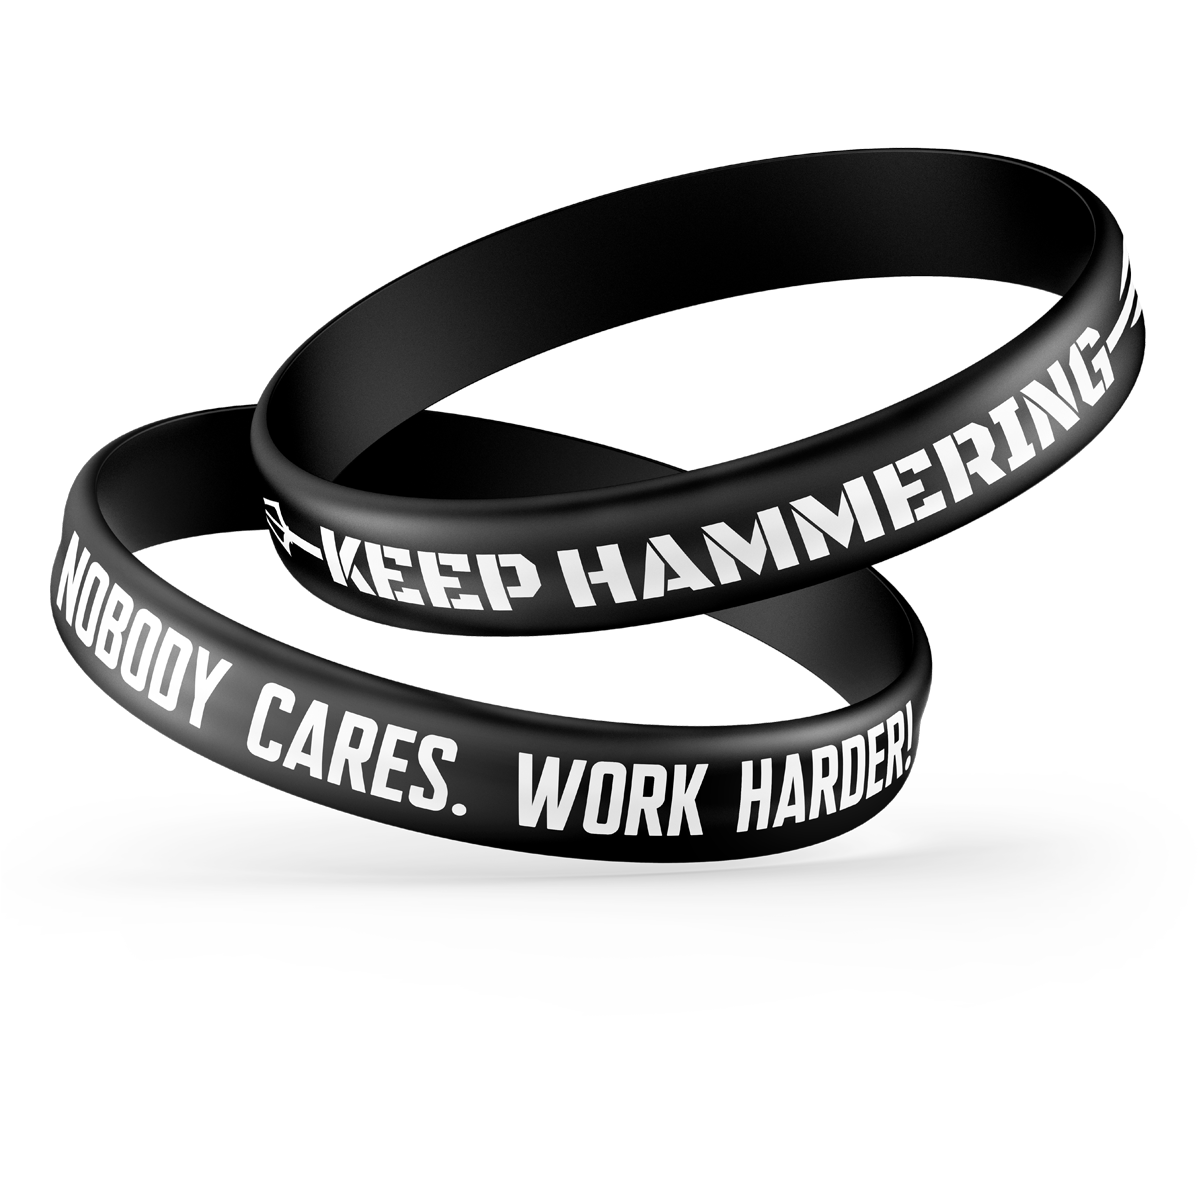 Nobody Cares. Work Harder! Wristband